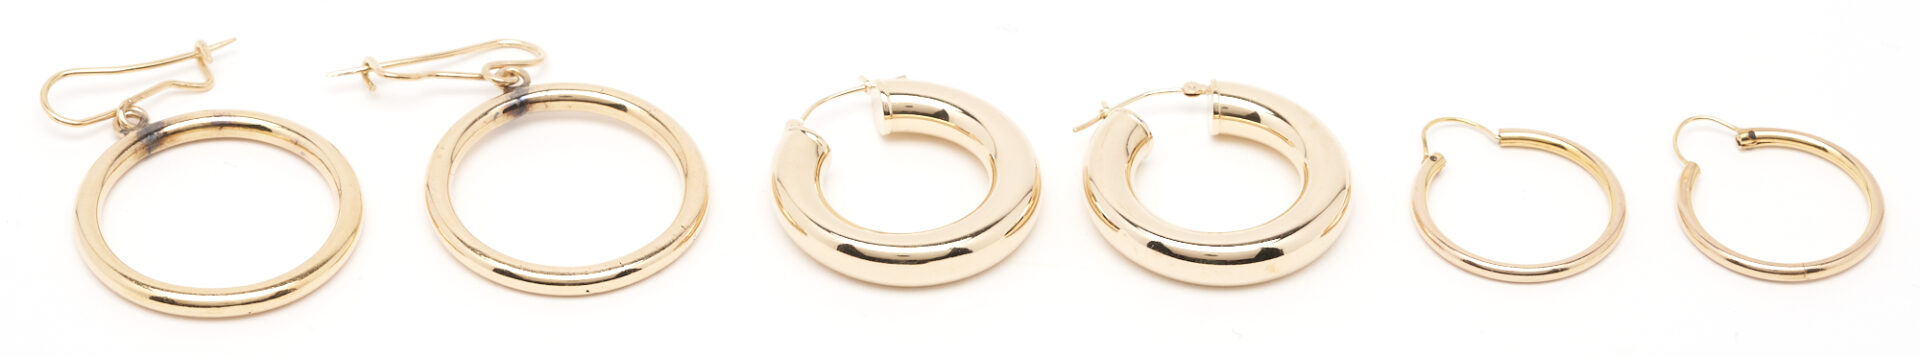 Lot 223: 3 Pairs of Ladies' Gold Hoop Earrings